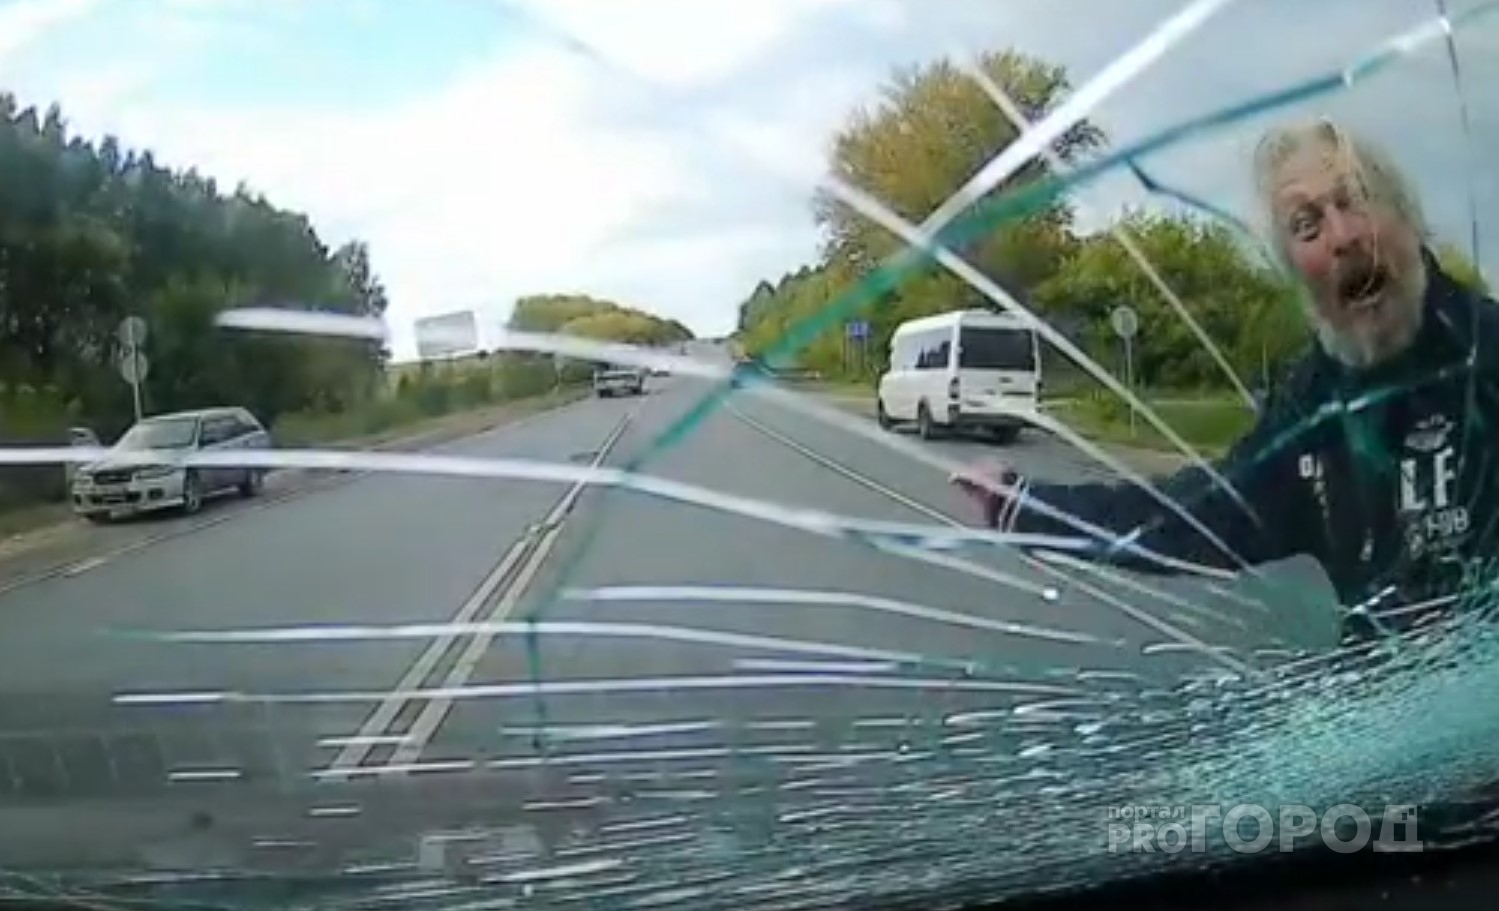 Абсолютно трезвый мужчина на оживленной дороге в Чебоксарском районе нападал на машины: кулаком разбил лобовое стекло